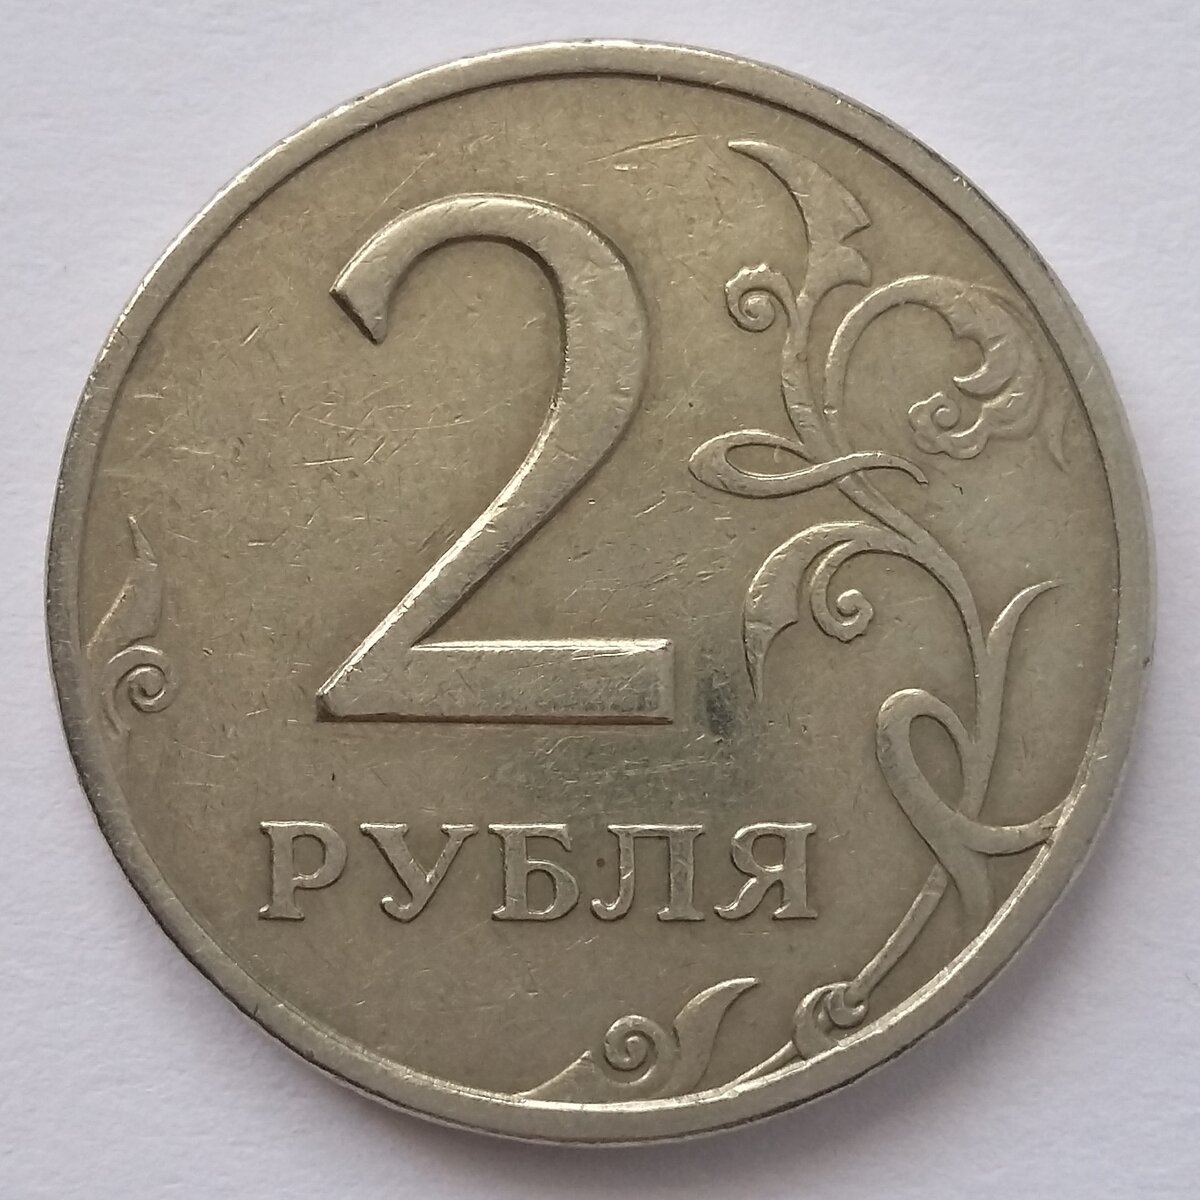 На столе лежат 2 монеты в сумме 3 рубля